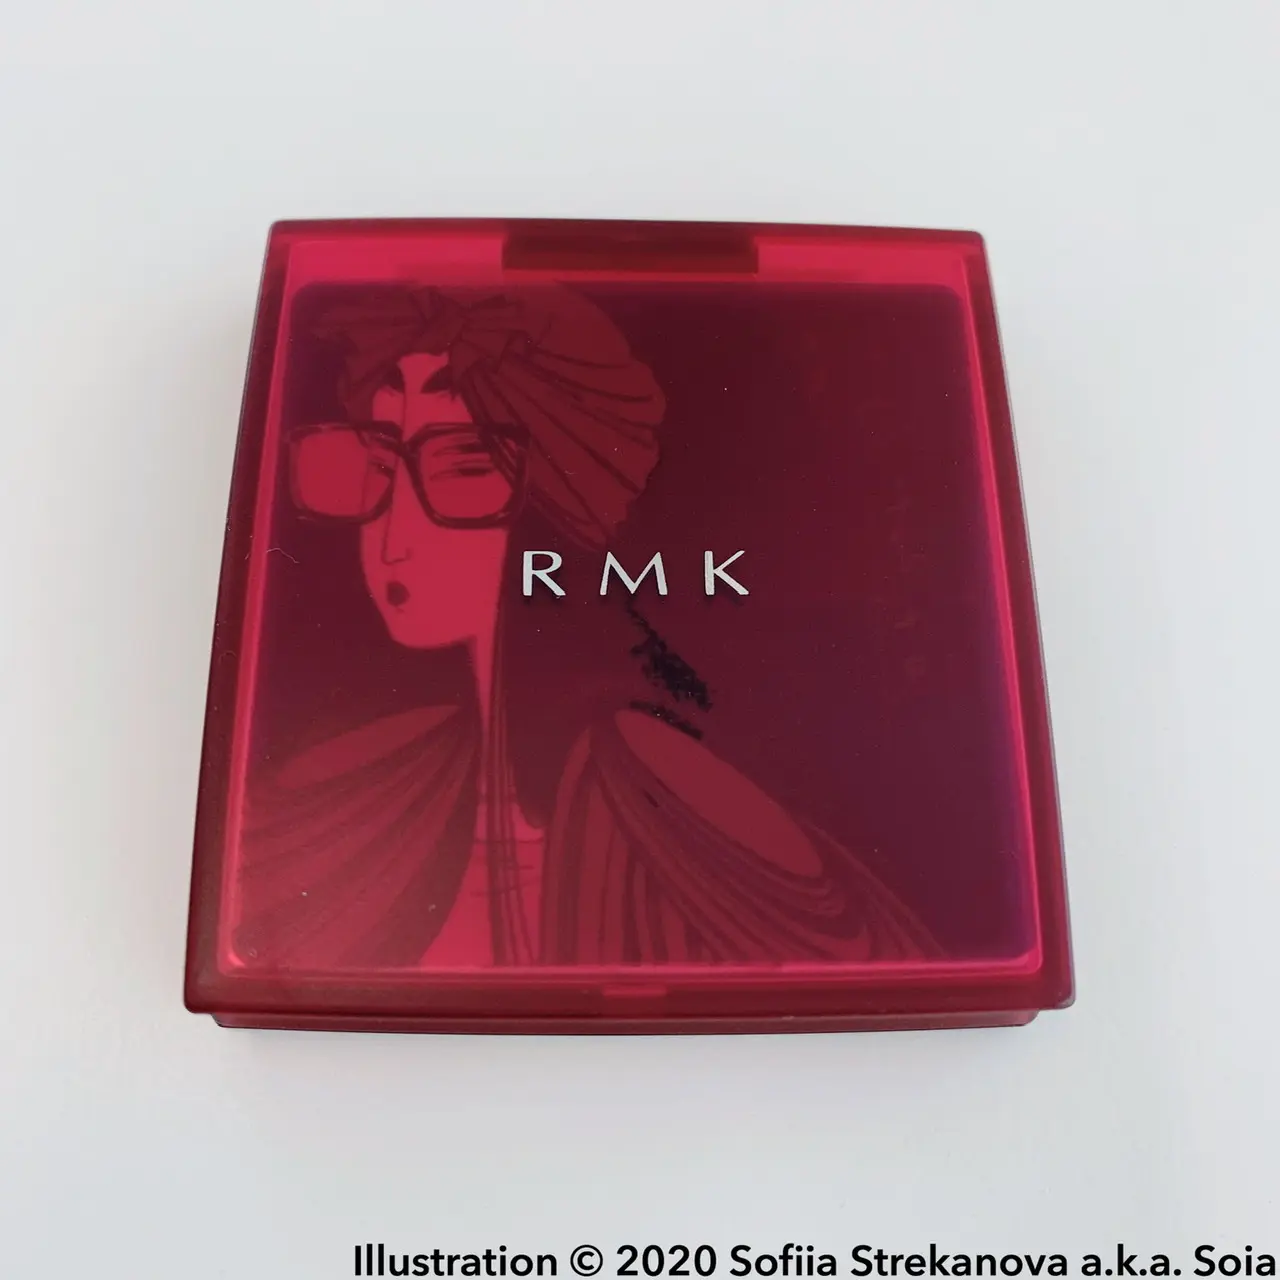 RMKアイパレットのパッケージには、モダンな美人画が描かれている。